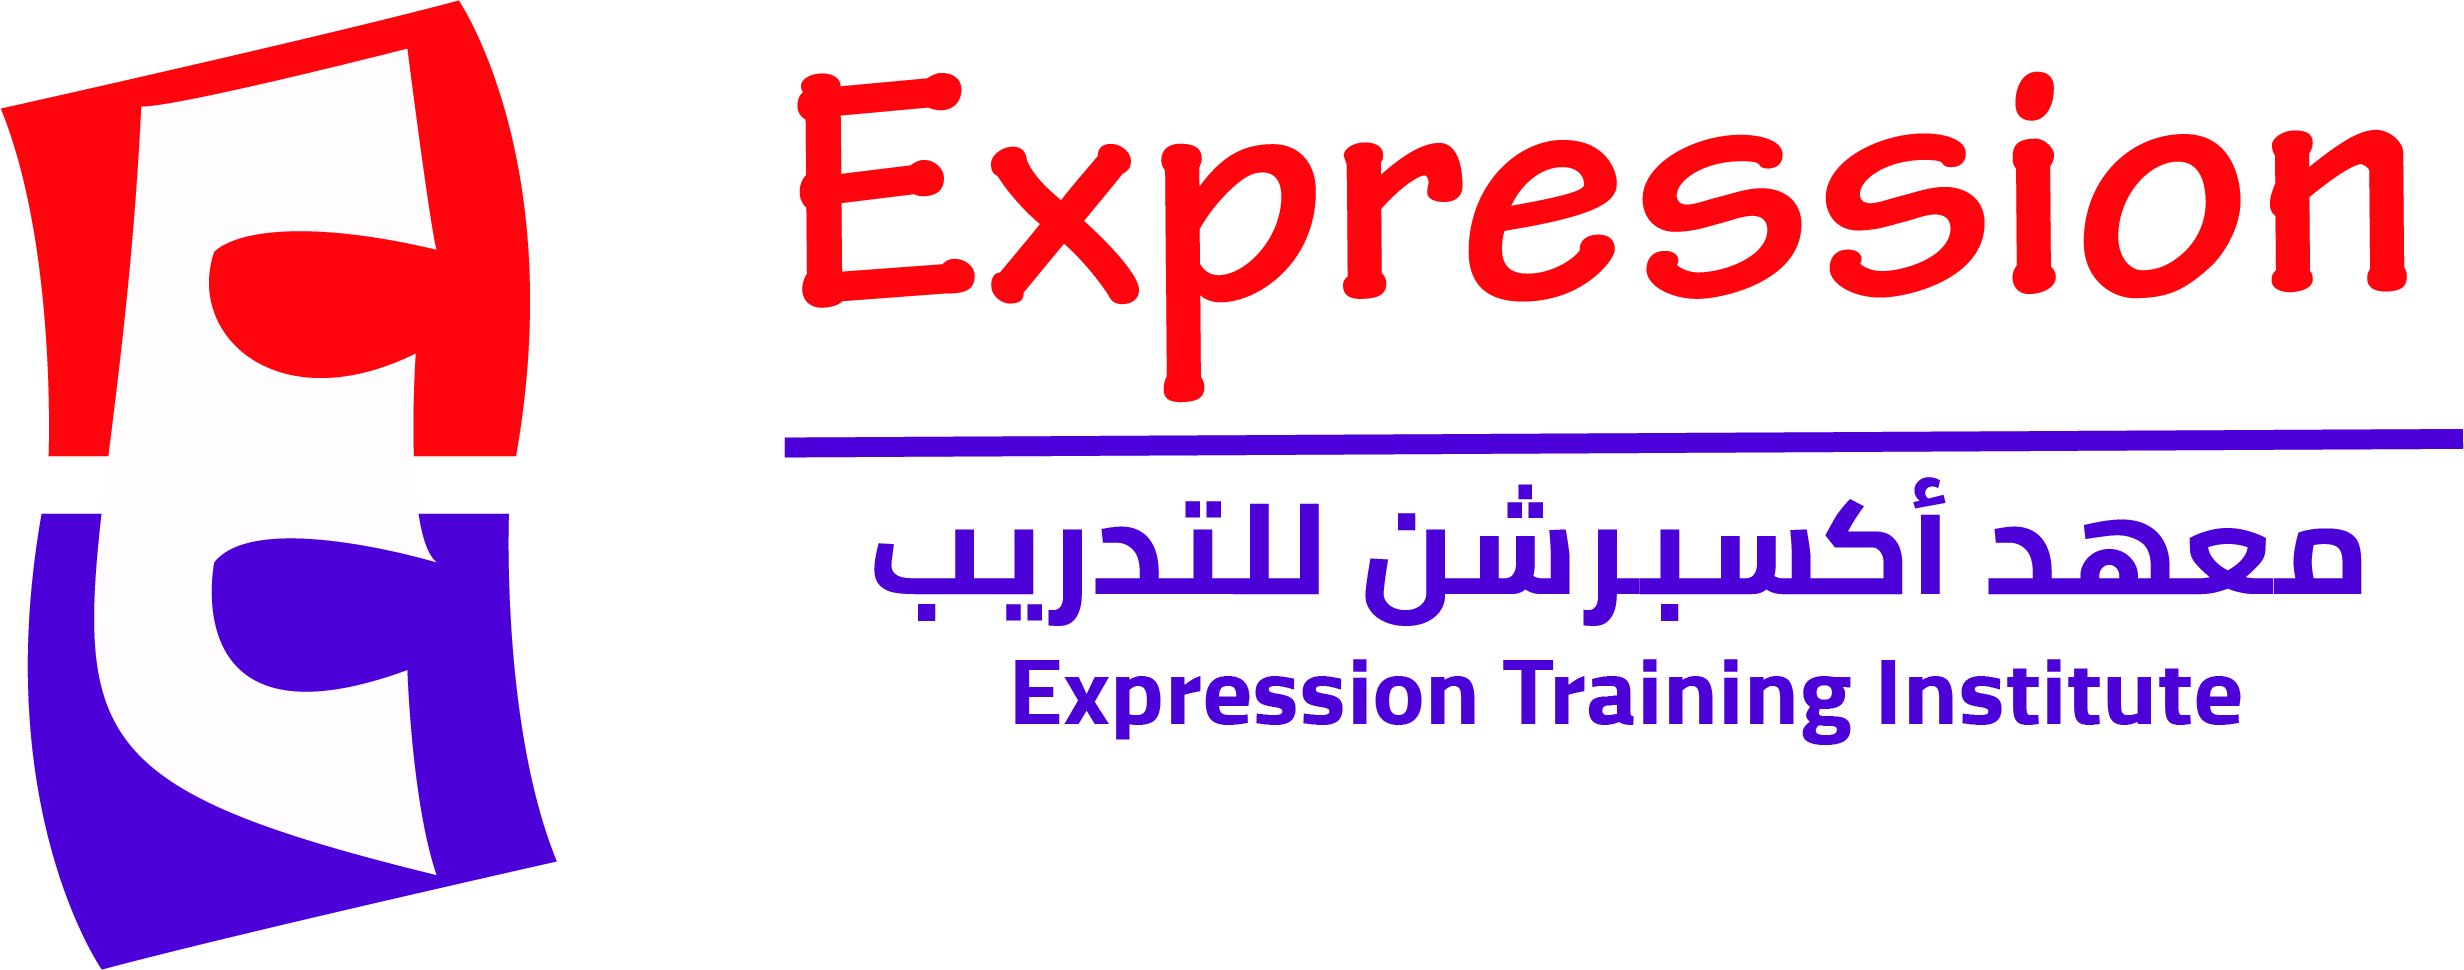 Expression Training Institute Logo